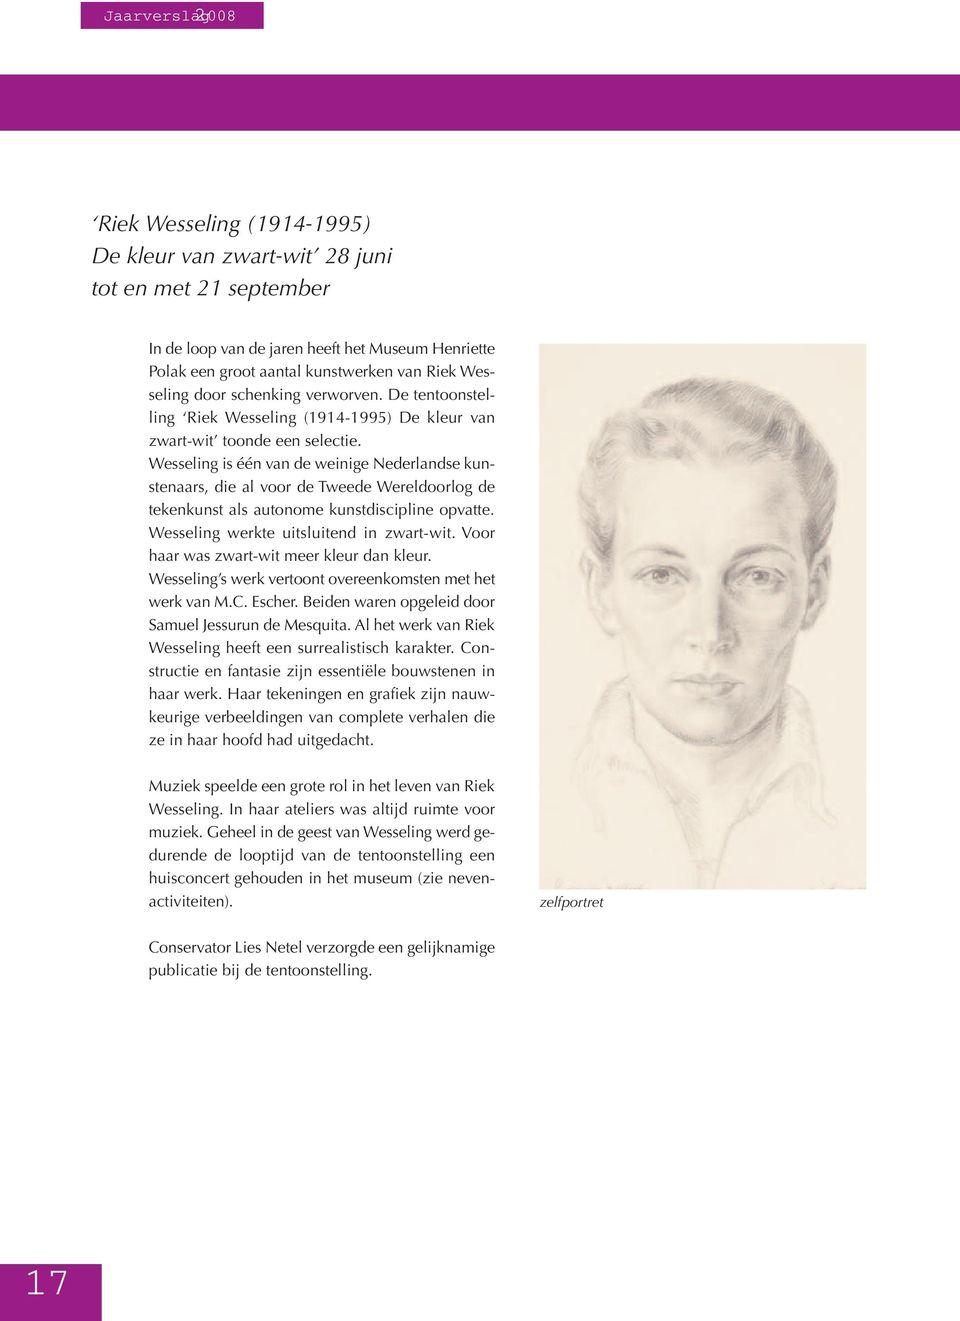 Wesseling is één van de weinige Nederlandse kunstenaars, die al voor de Tweede Wereldoorlog de tekenkunst als autonome kunstdiscipline opvatte. Wesseling werkte uitsluitend in zwart-wit.